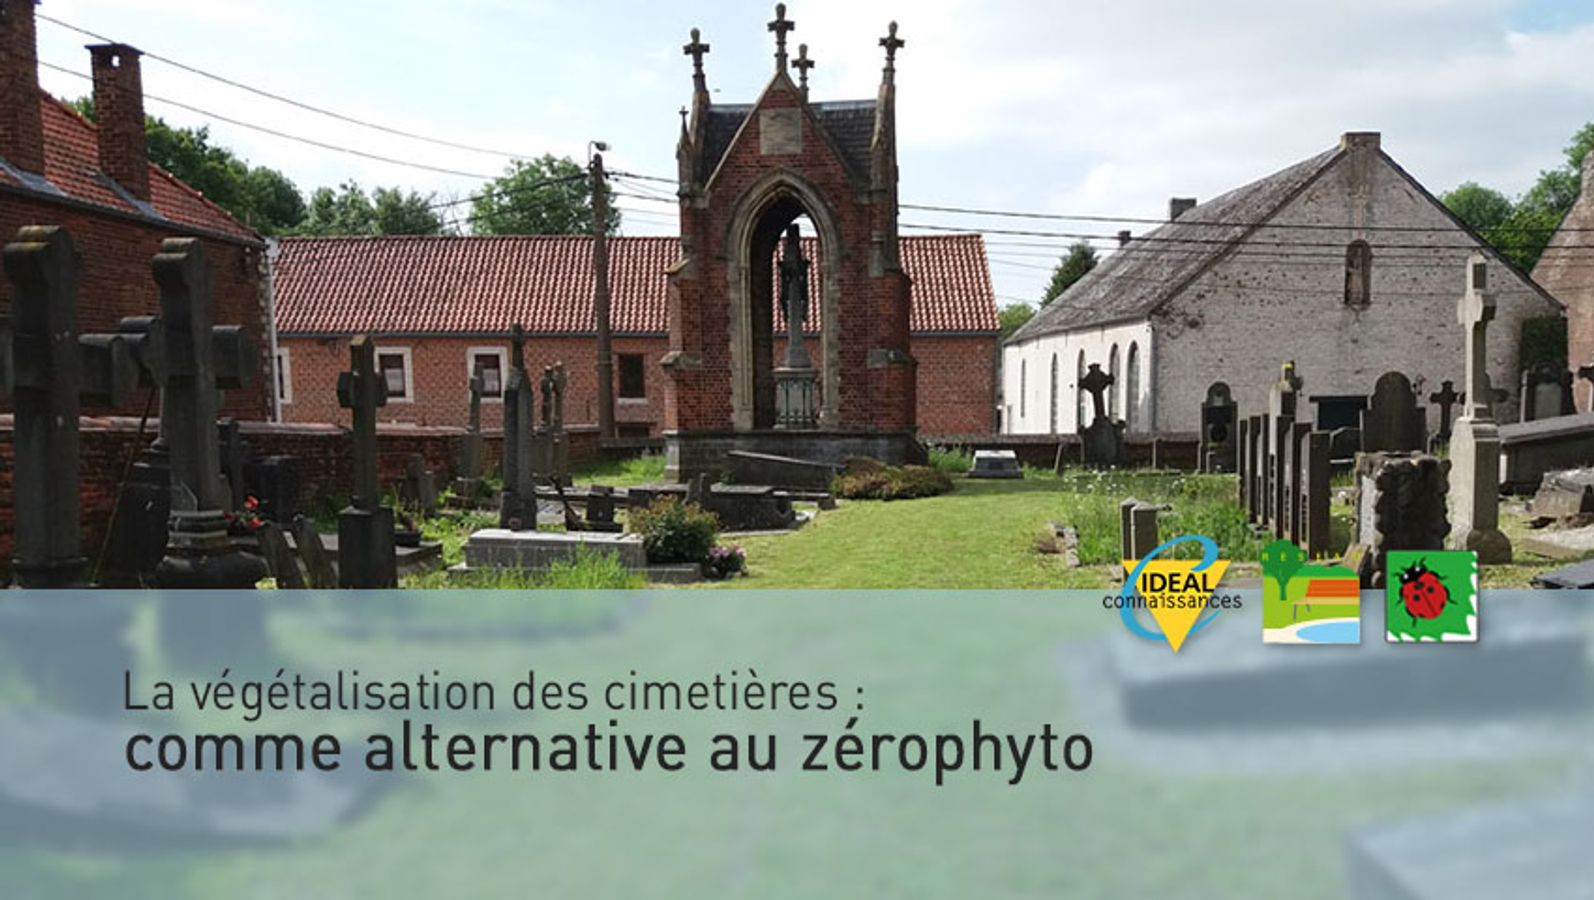 La végétalisation des cimetières comme alternative au zérophyto